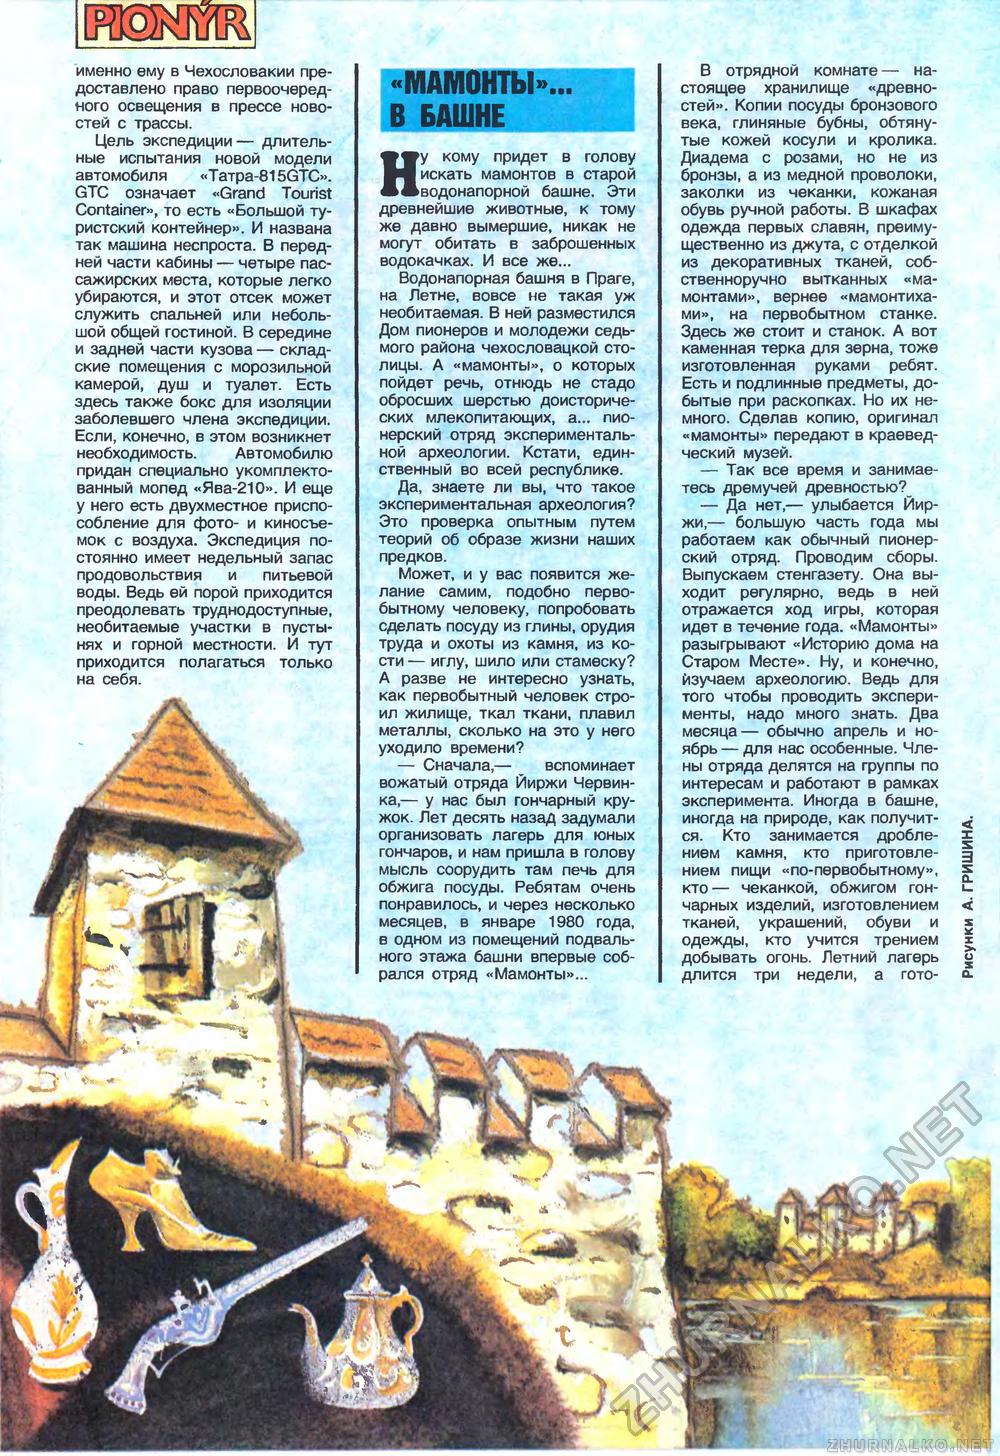 Пионер 1989-04, страница 26